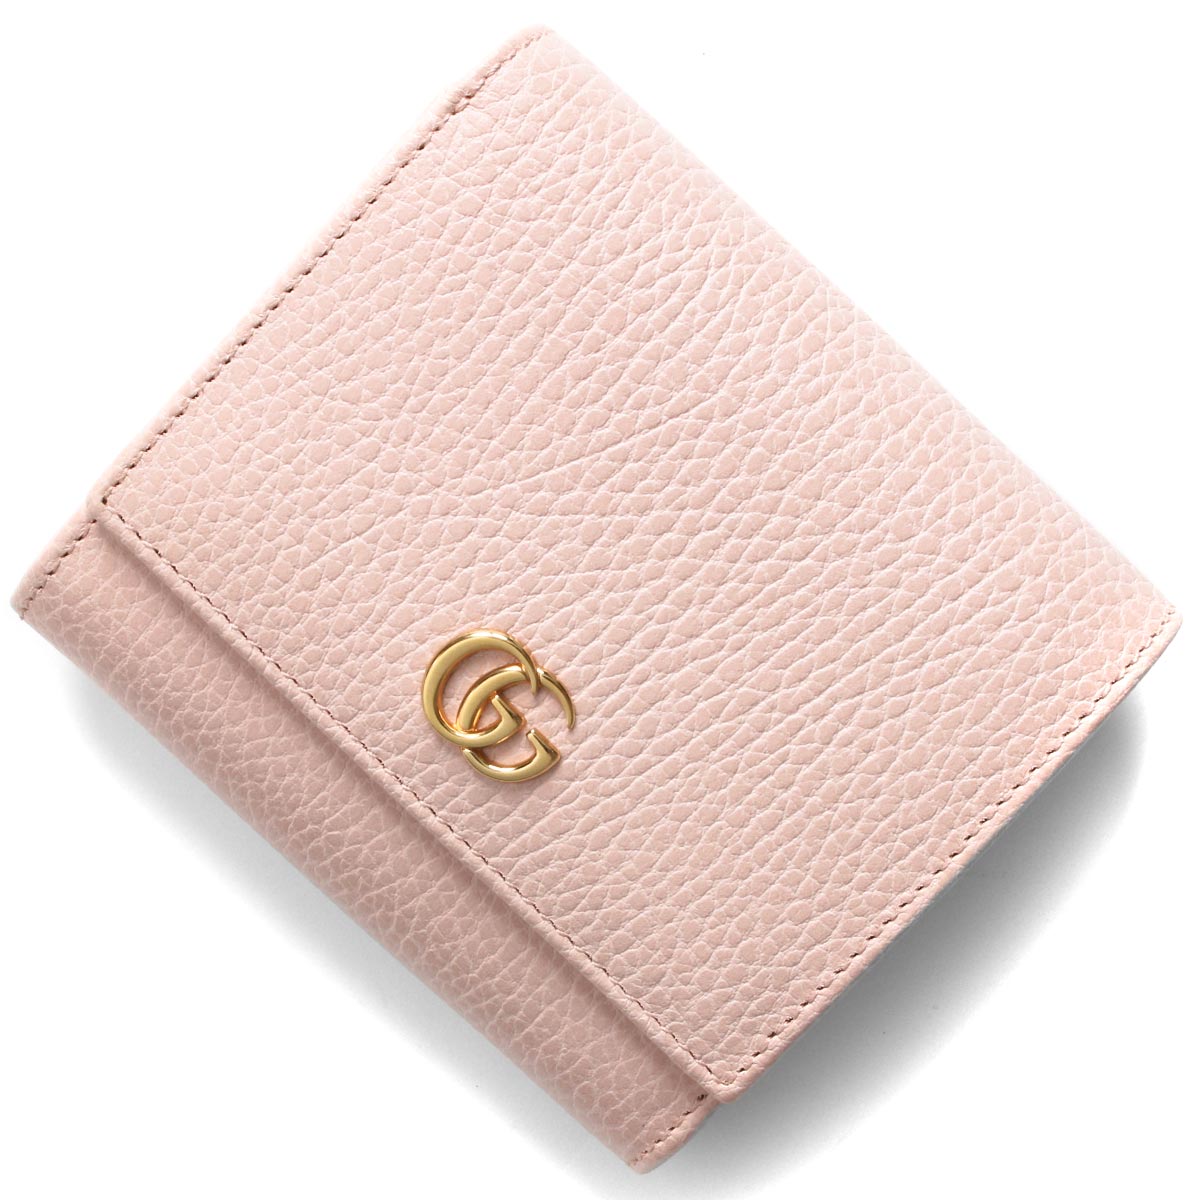 ☆グッチ GG マーモント 二つ折り 財布 レザー ピンクピンク金具 - 財布